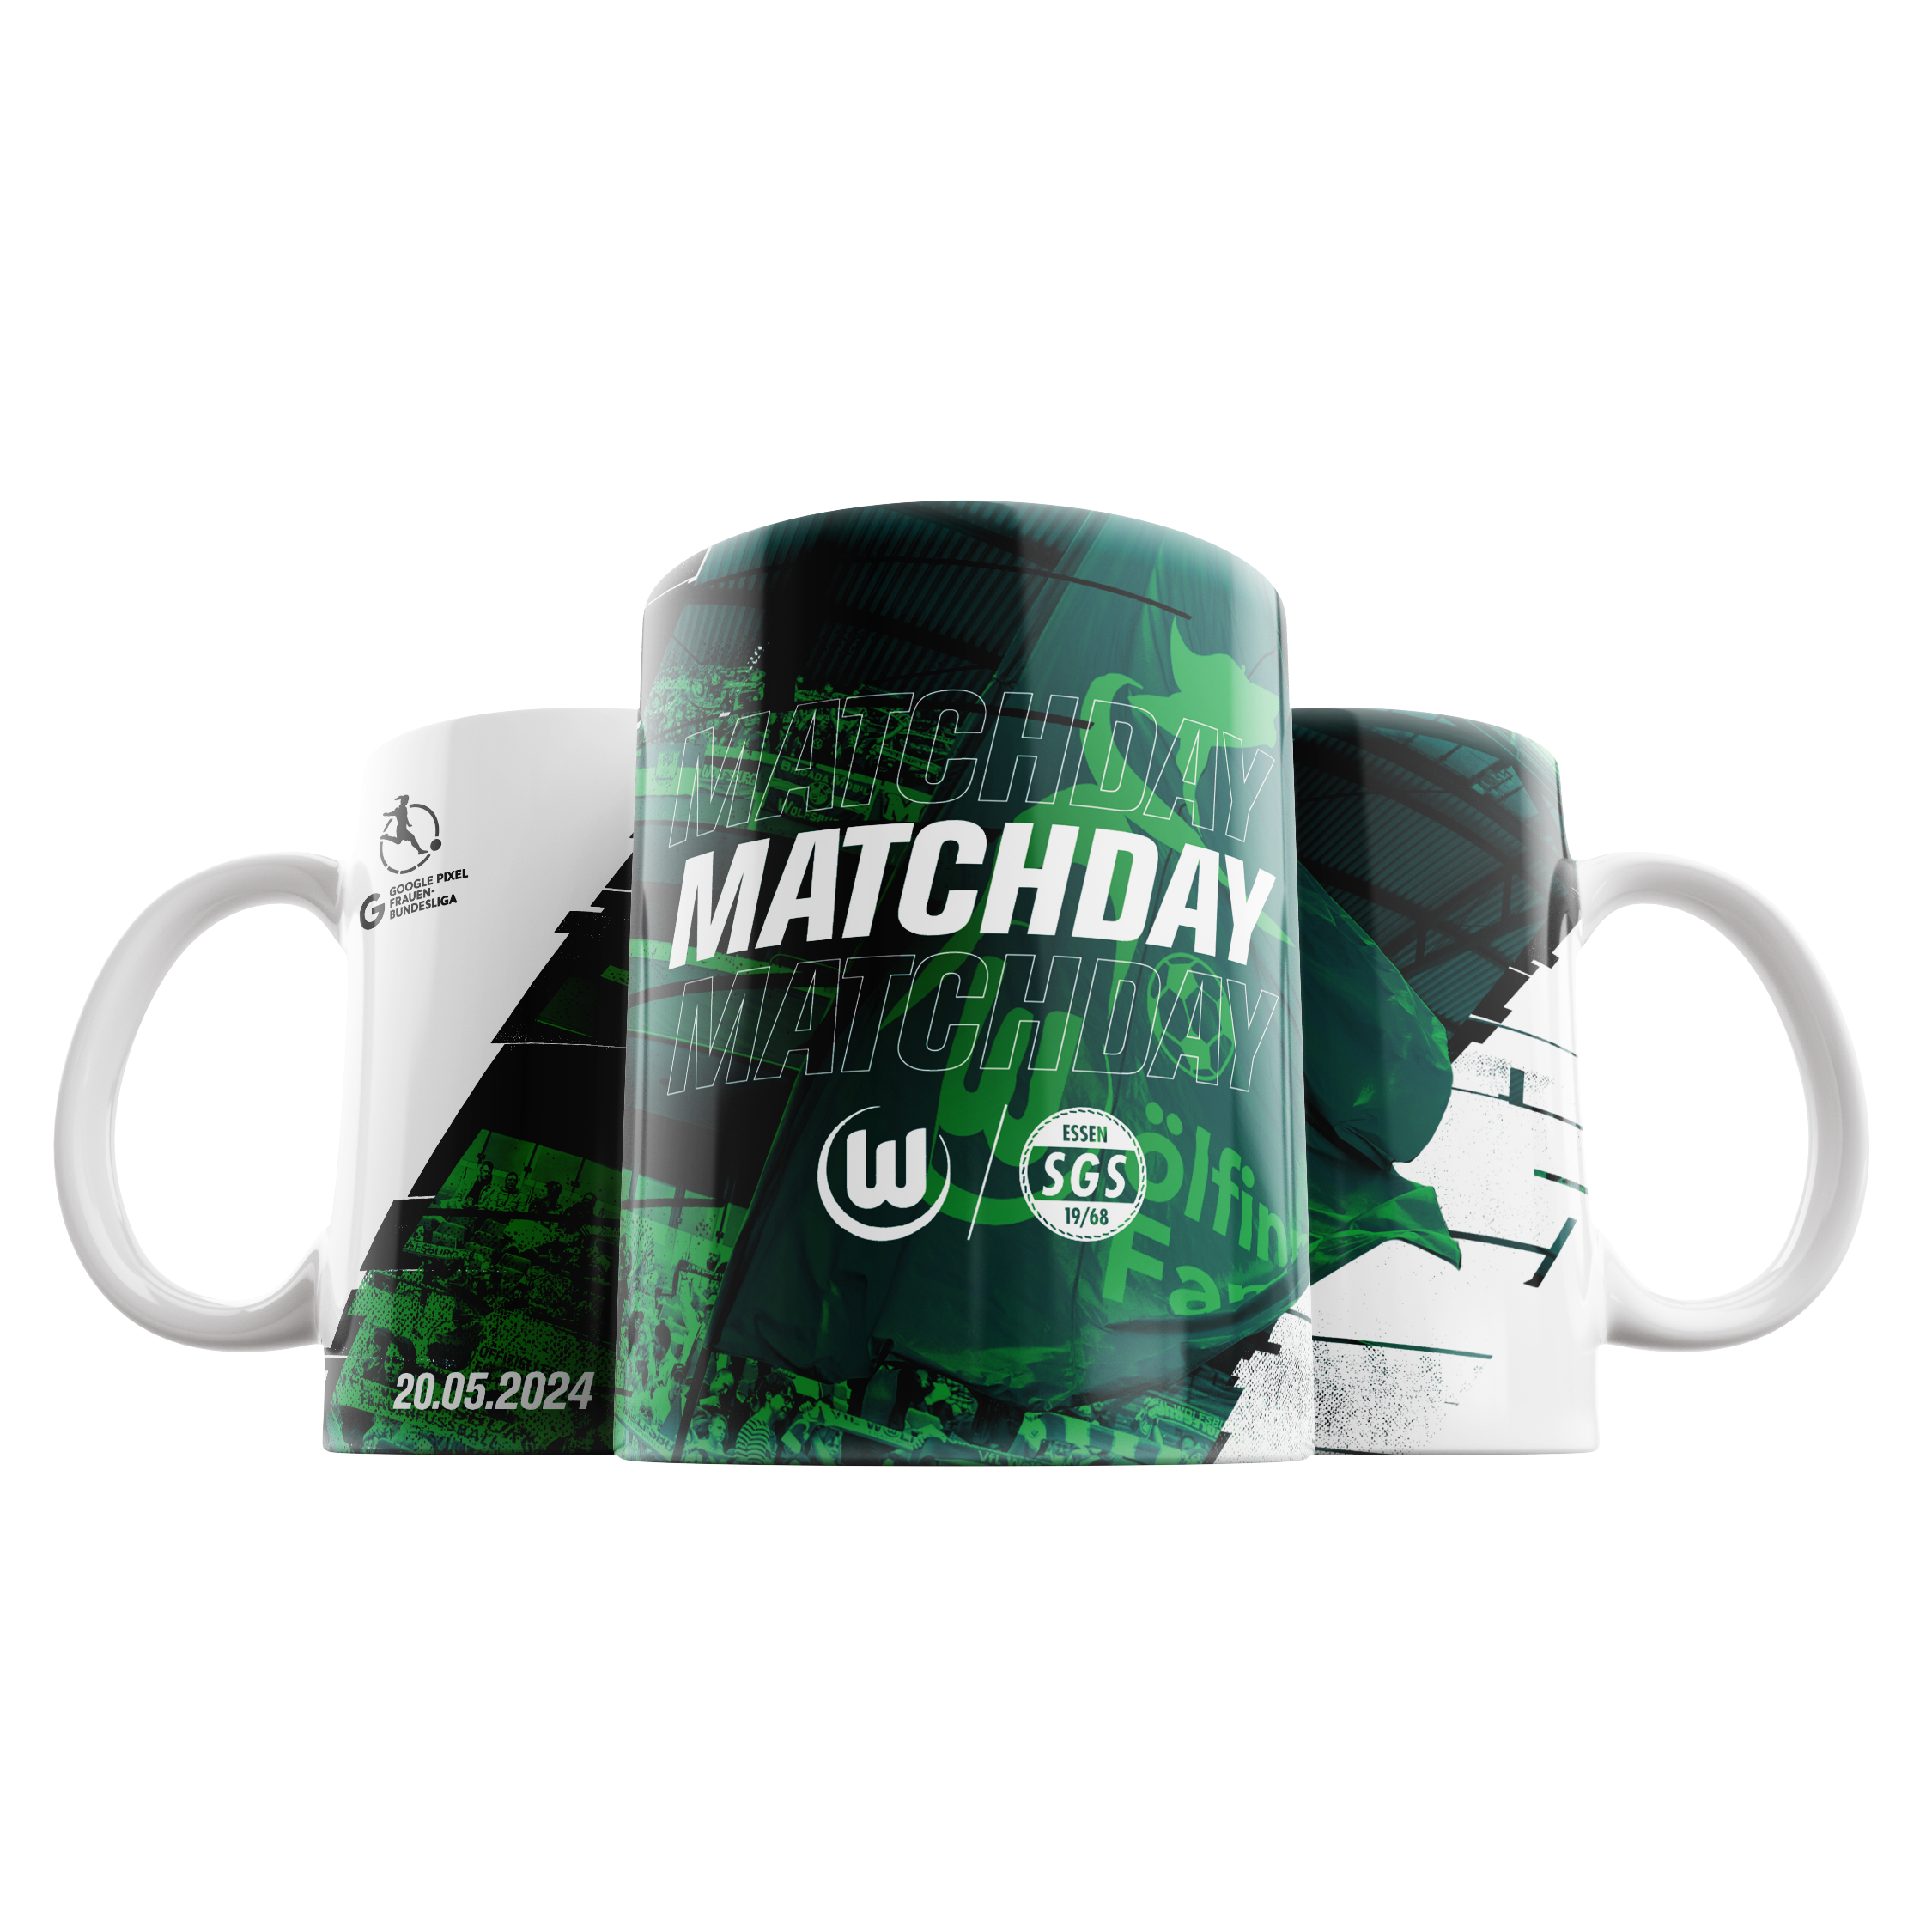 Matchday mug